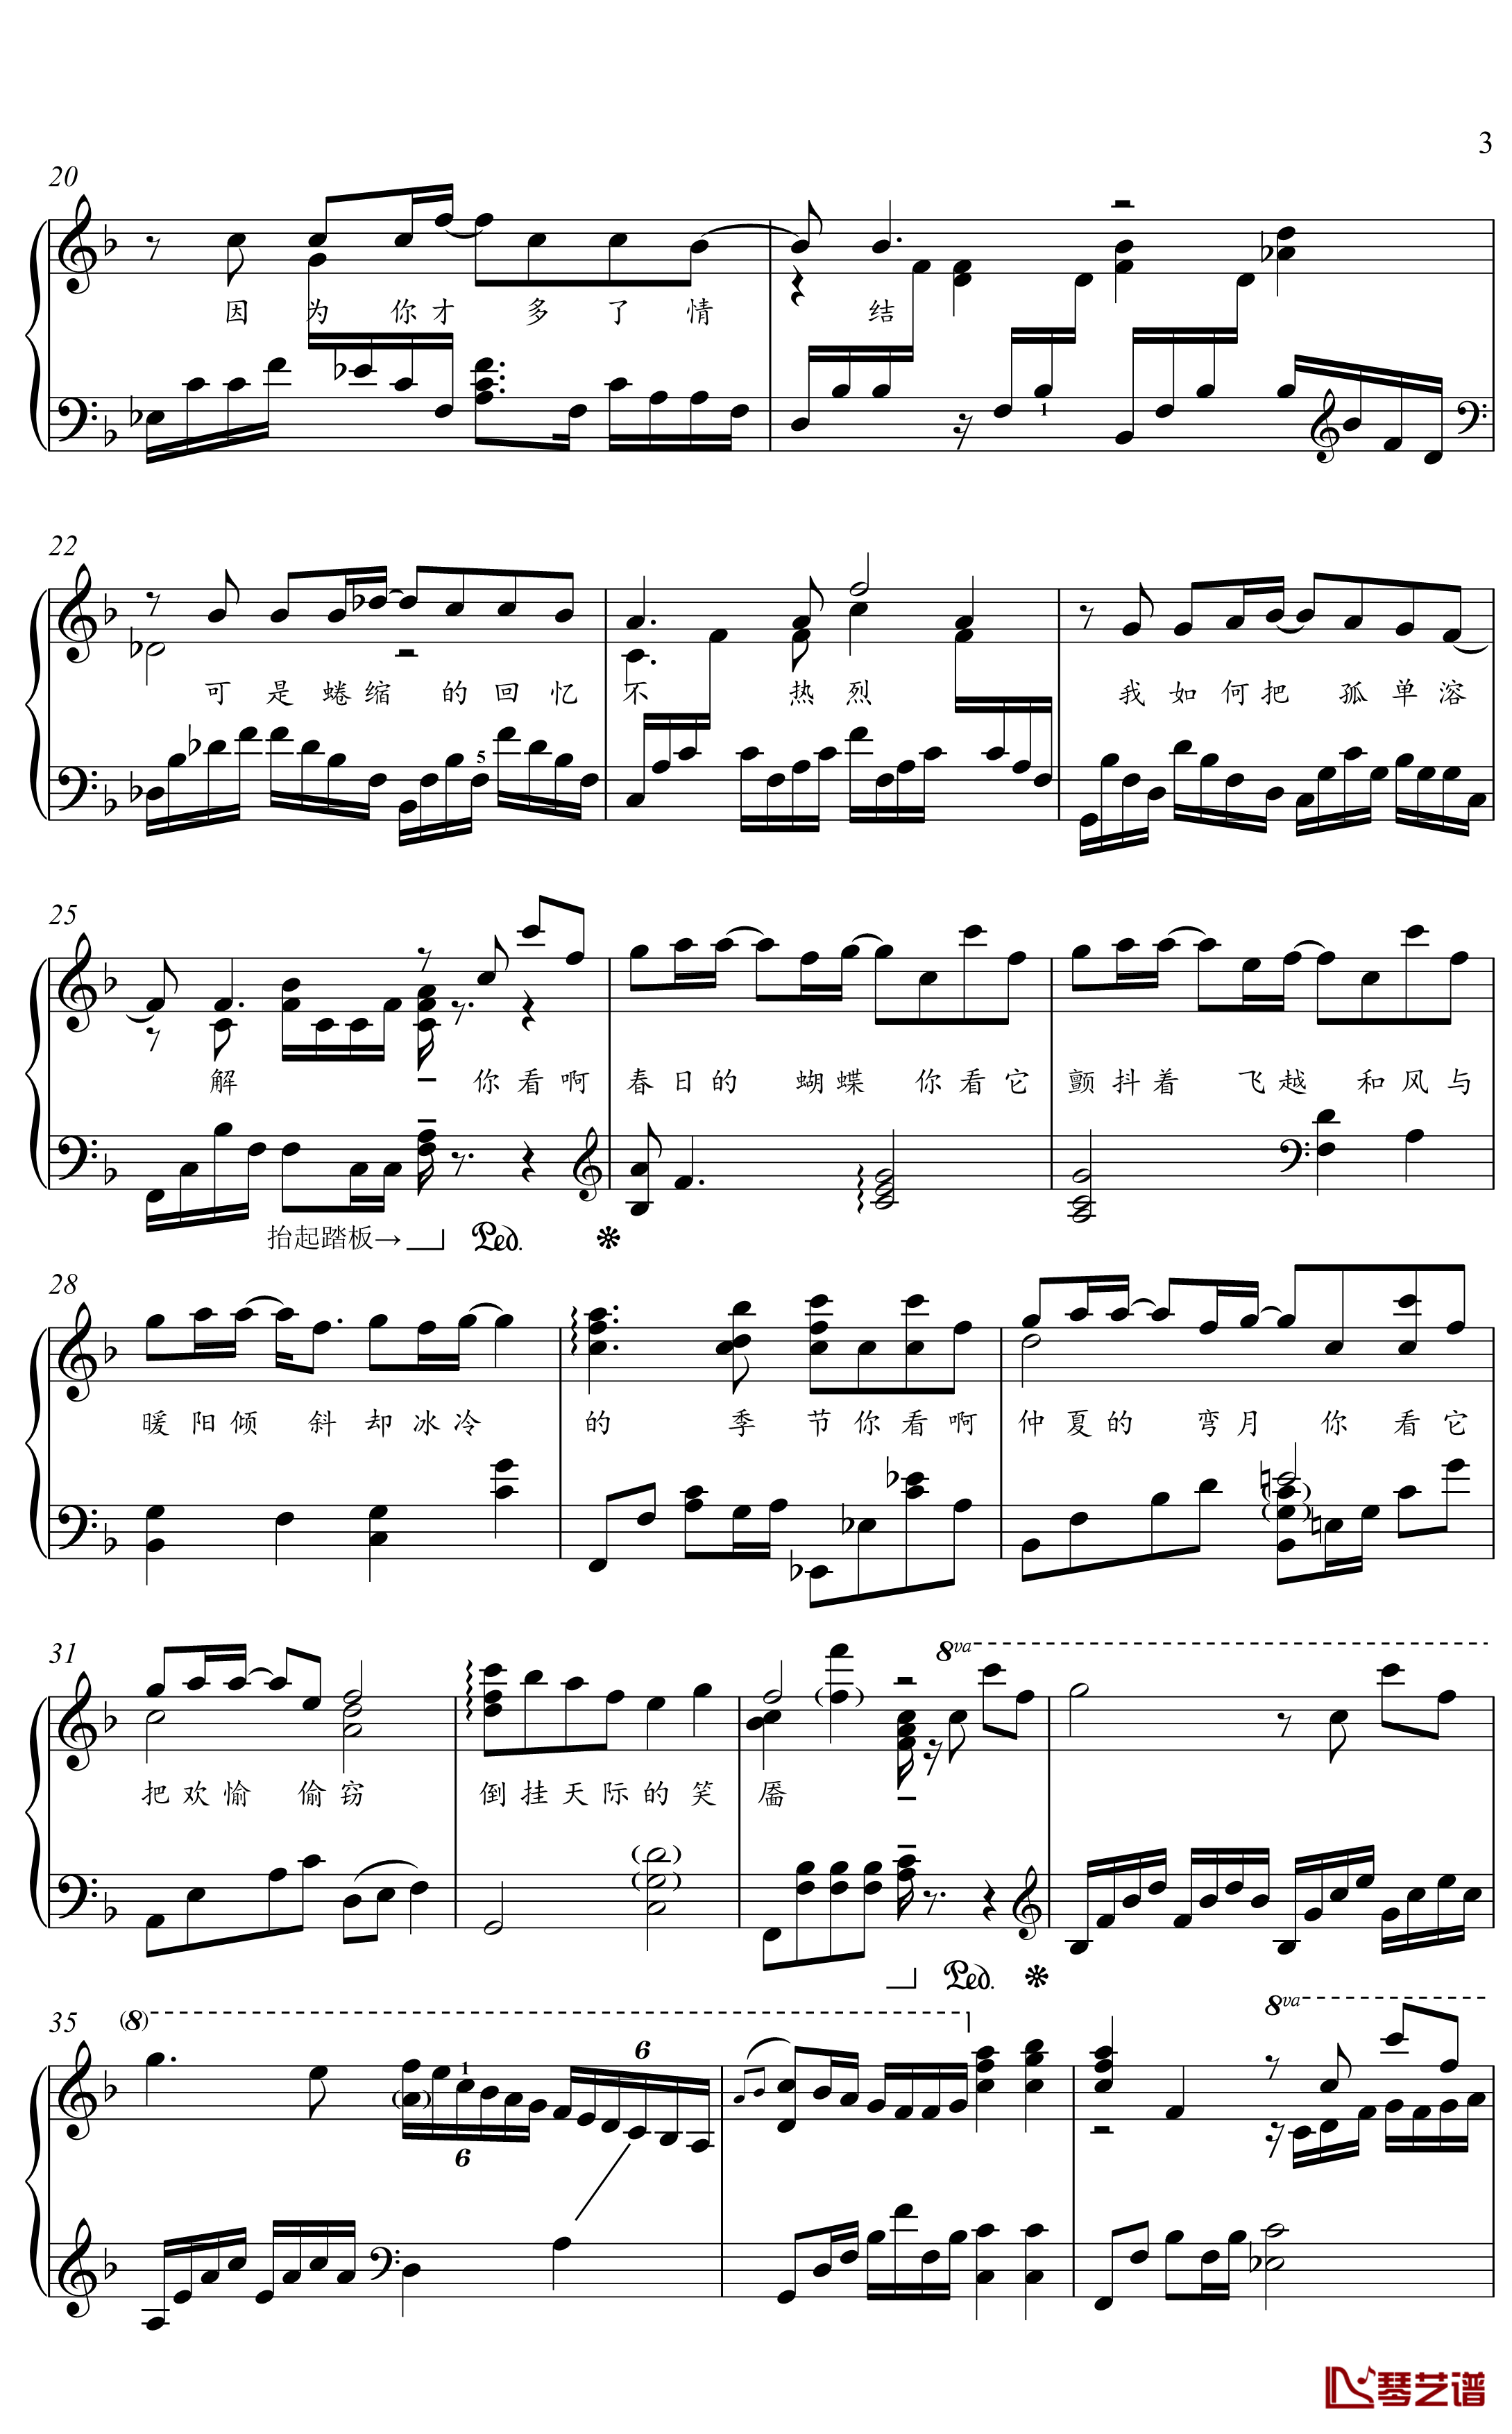 冬眠钢琴谱-金老师独奏谱2003013